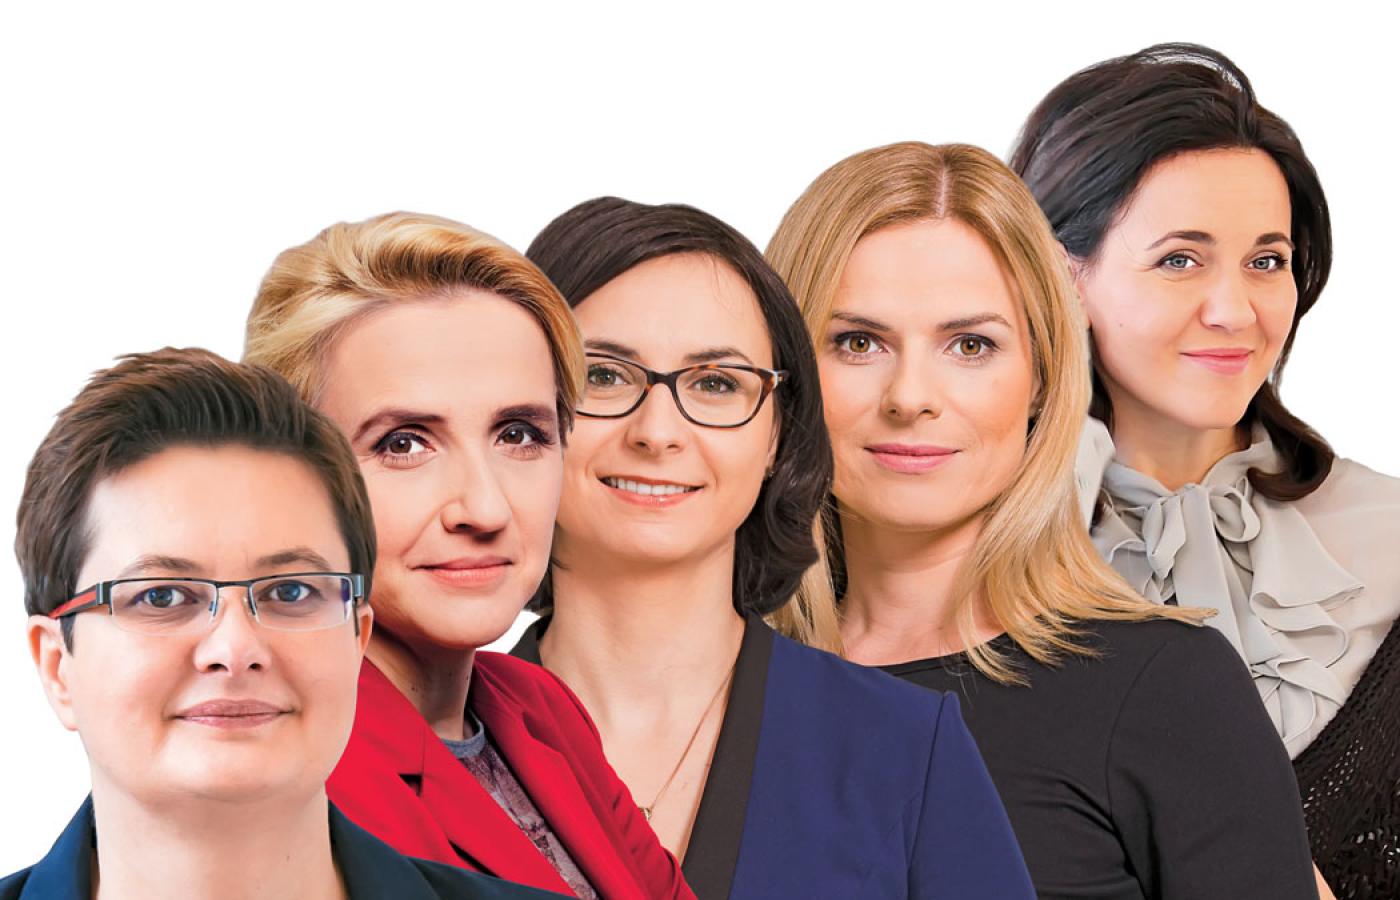 Od lewej: Katarzyna Lubnauer, Joanna Scheuring-Wielgus, Kamila Gasiuk-Pihowicz, Joanna Schmidt i Kornelia Wróblewska